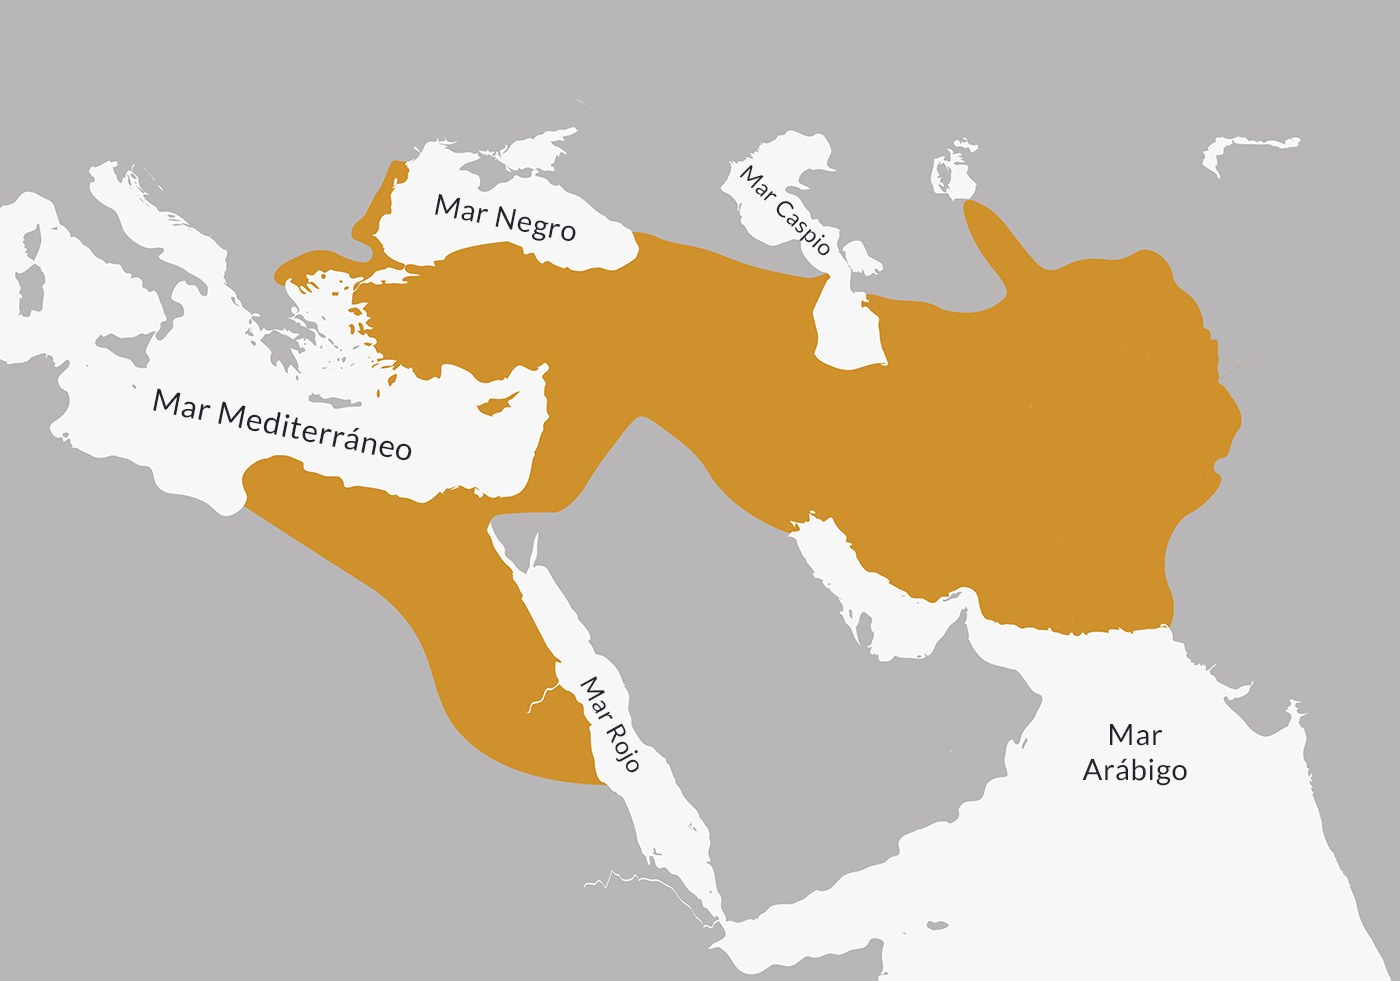 Ubicación del Imperio persa aqueménida hacia el 500 a. C., año en el que alcanzó su máxima extensión territorial.